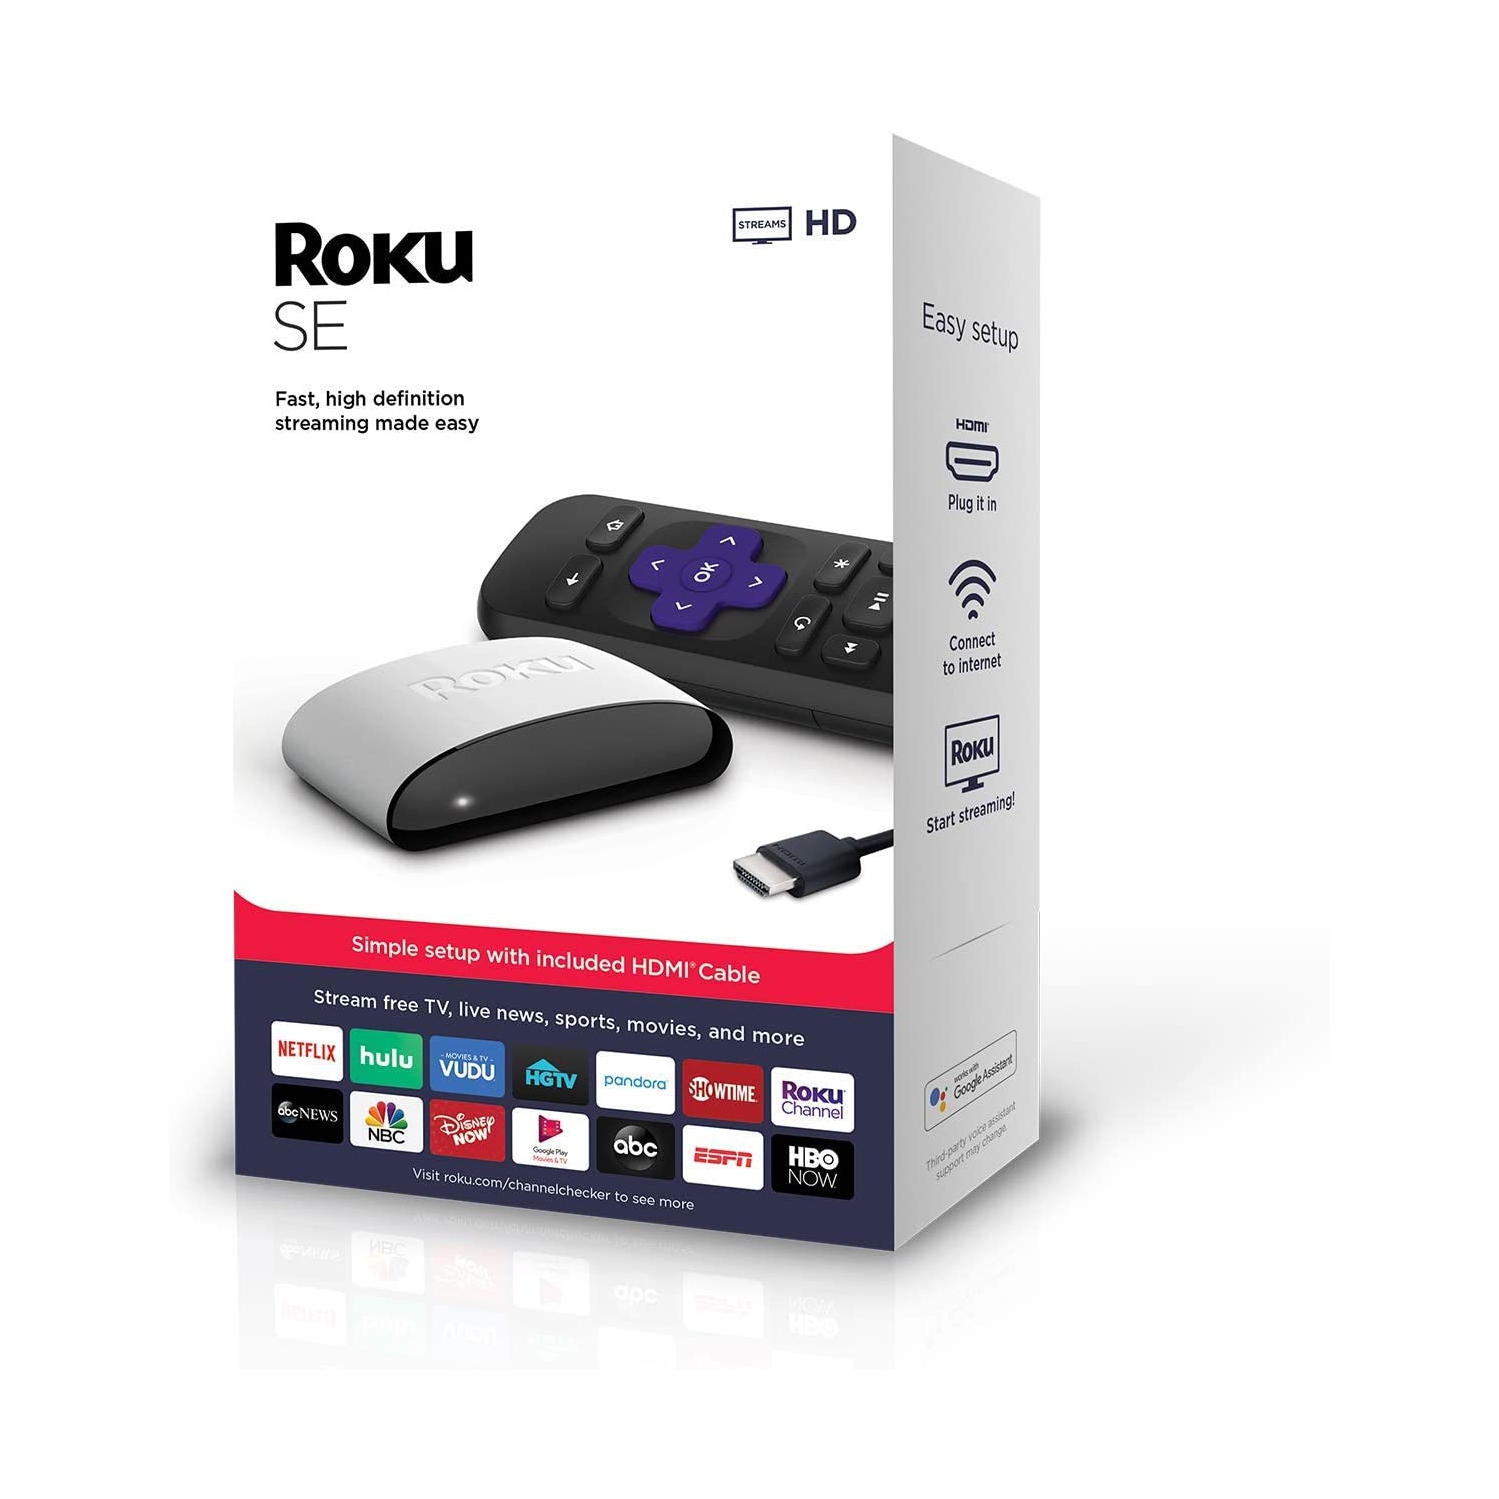 Roku SE Streaming Media Player 3930SE - Brand New - Black